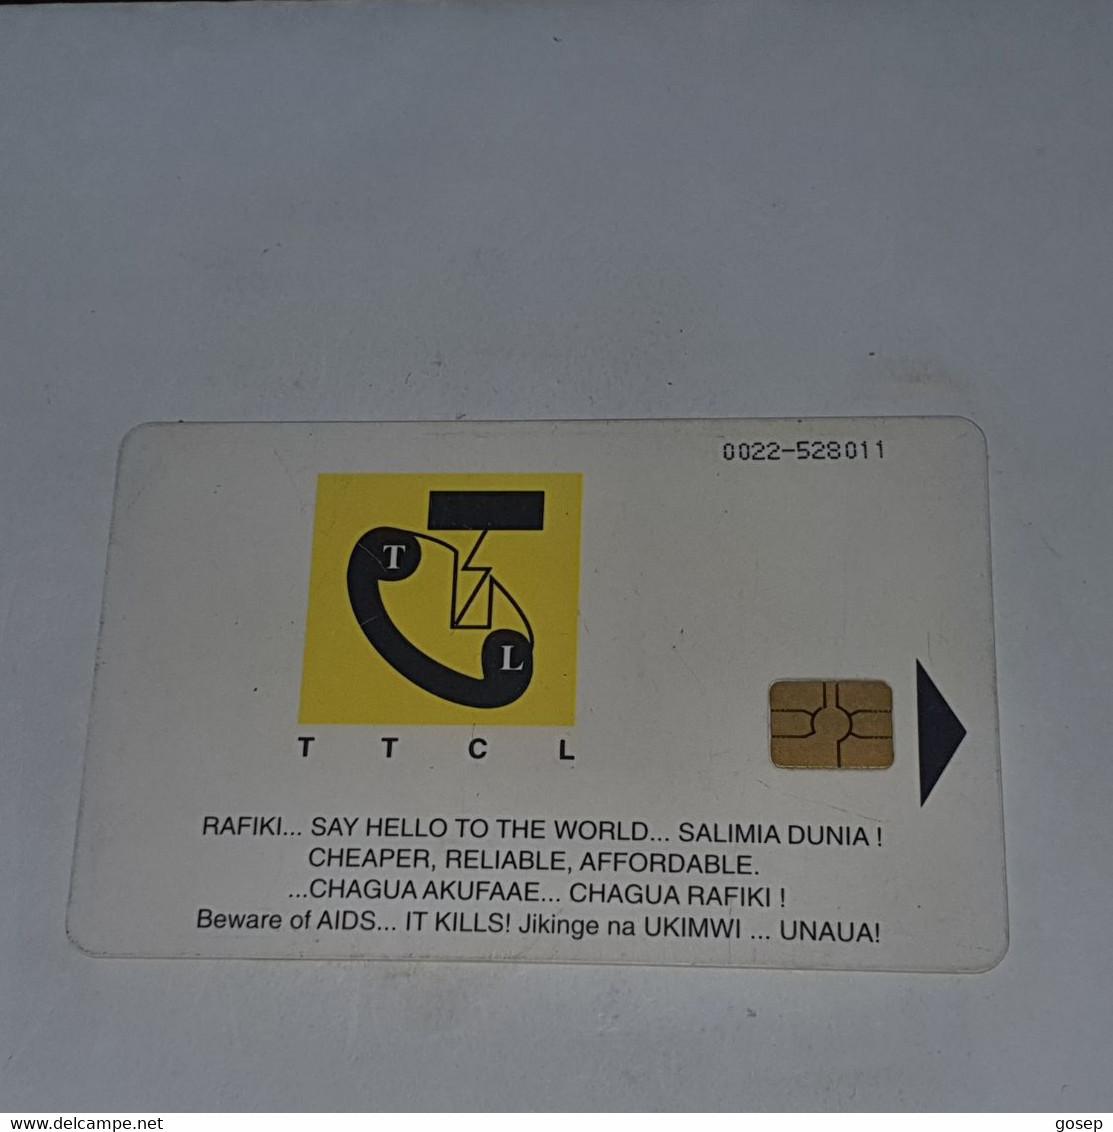 Tanzania-(TAZ-TT-13E)-building-text Rafiki-(17)-(20units)-(0022-528011)-used Card+1card Prepiad/gift Free - Tanzanie